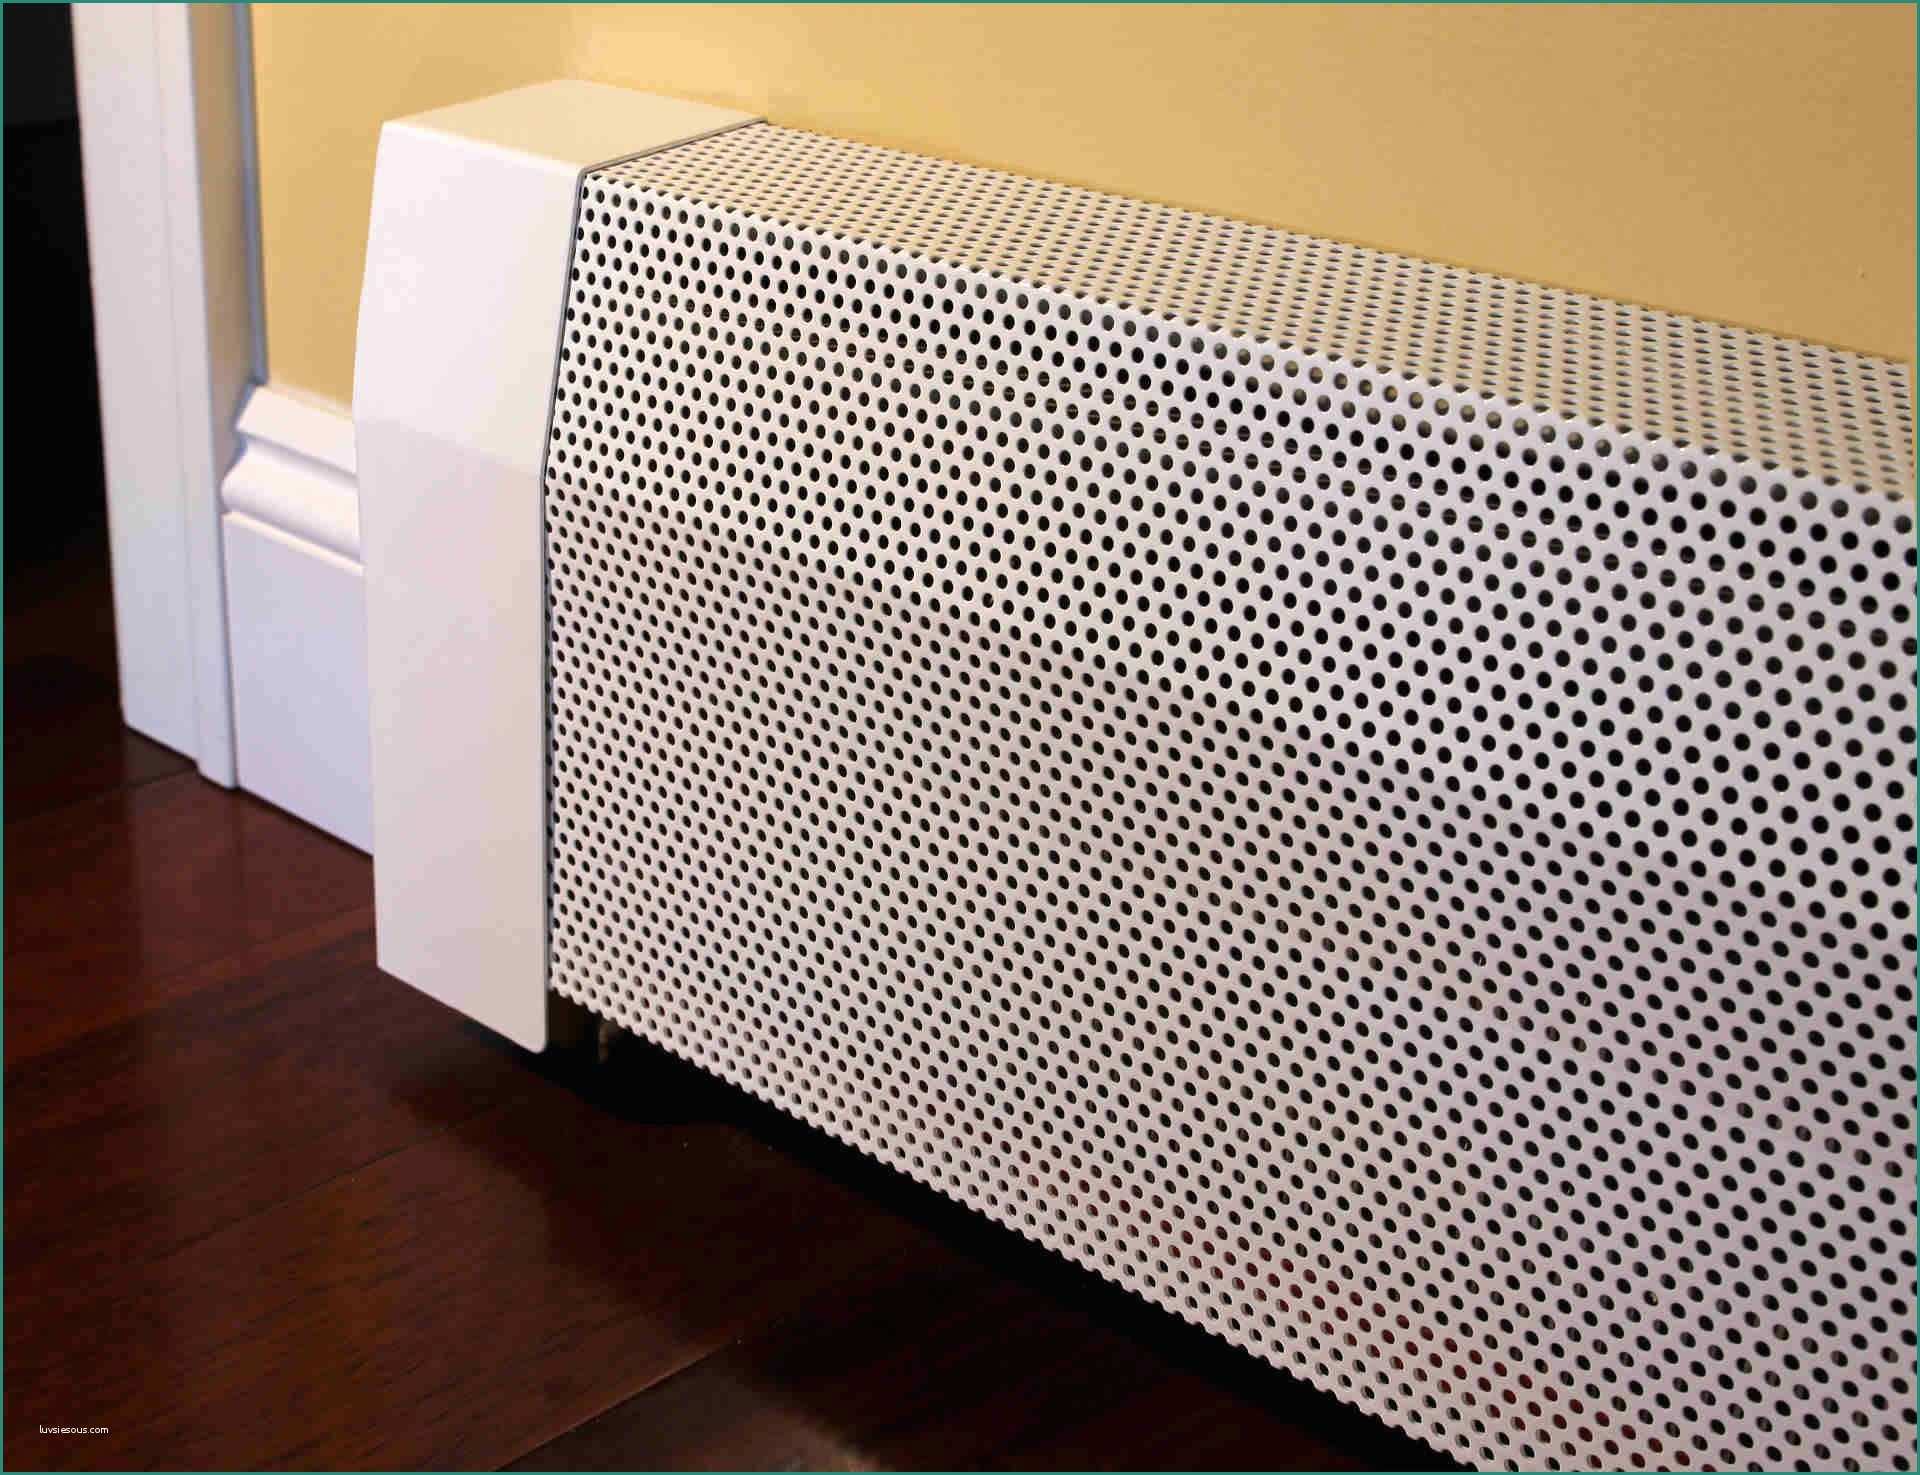 Pannelli Fonoassorbenti Decorativi E Baseboard Heater Covers Google Search Apartment